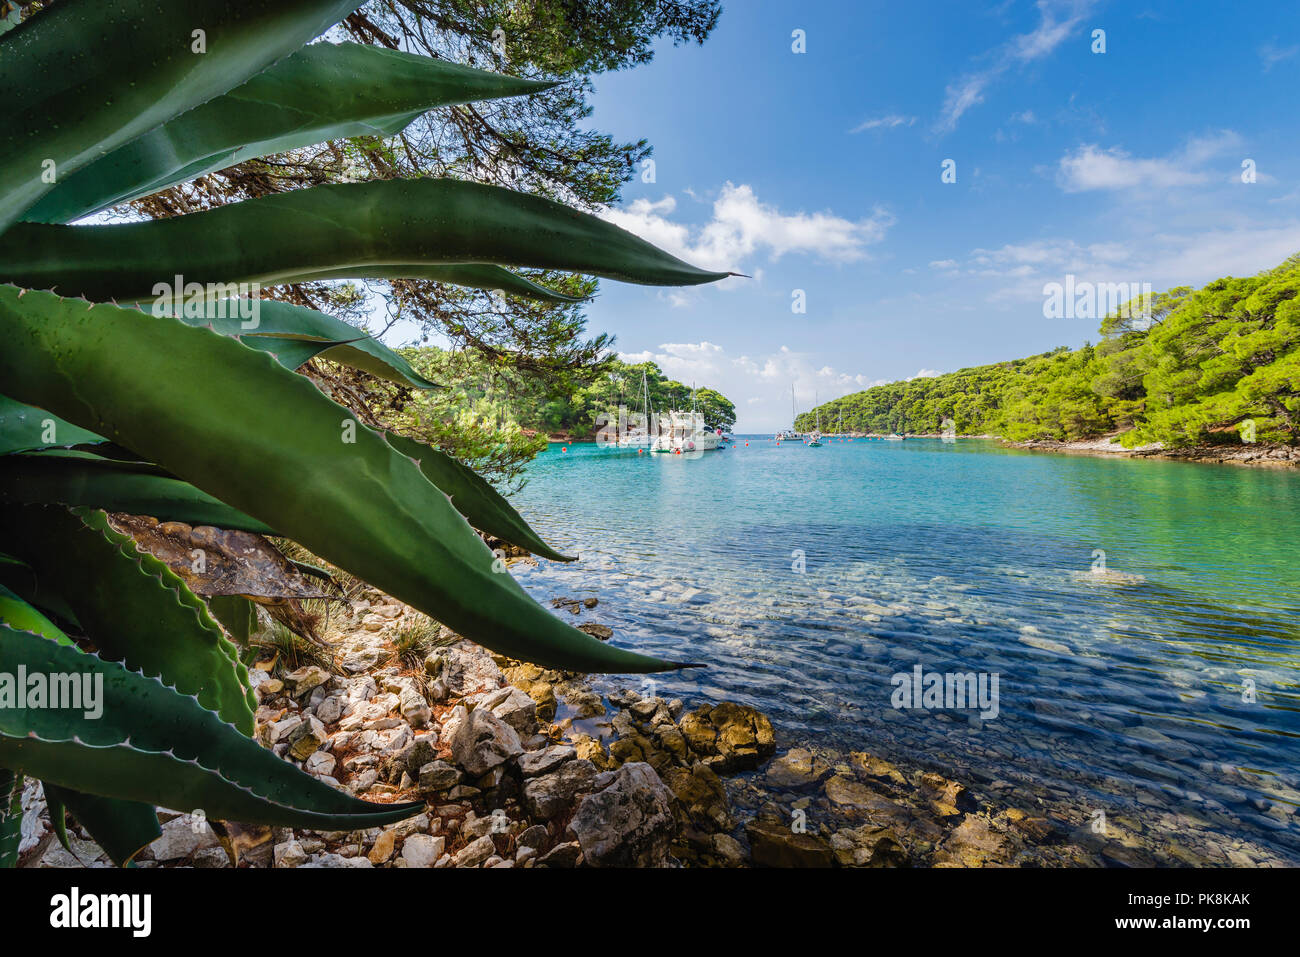 Voiliers et yachts amarrés dans la baie entourée par Krivica côte rocheuse, forêt de pins et d'un agave sur l'île de Lošinj, la baie de Kvarner, Croatie Banque D'Images